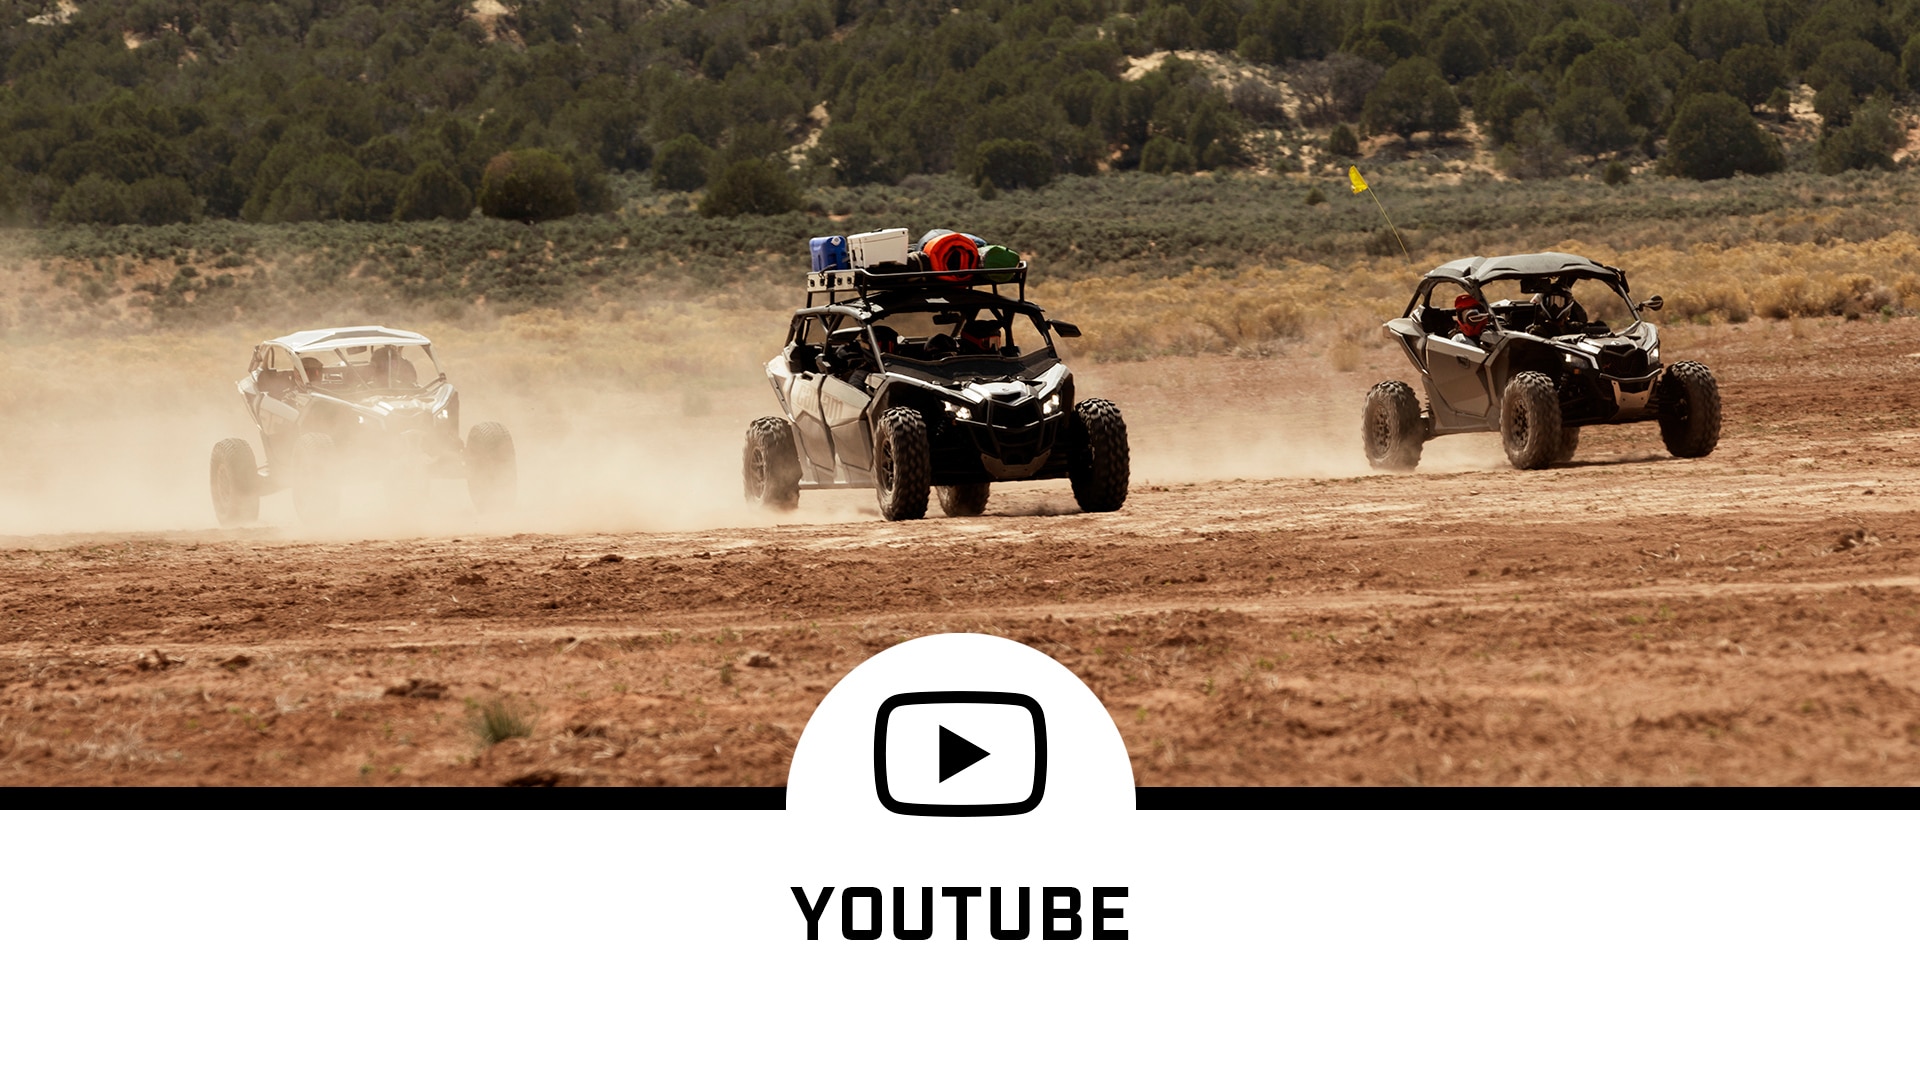 Véhicules Can-Am sur un terrain de terre et le logo de YouTube